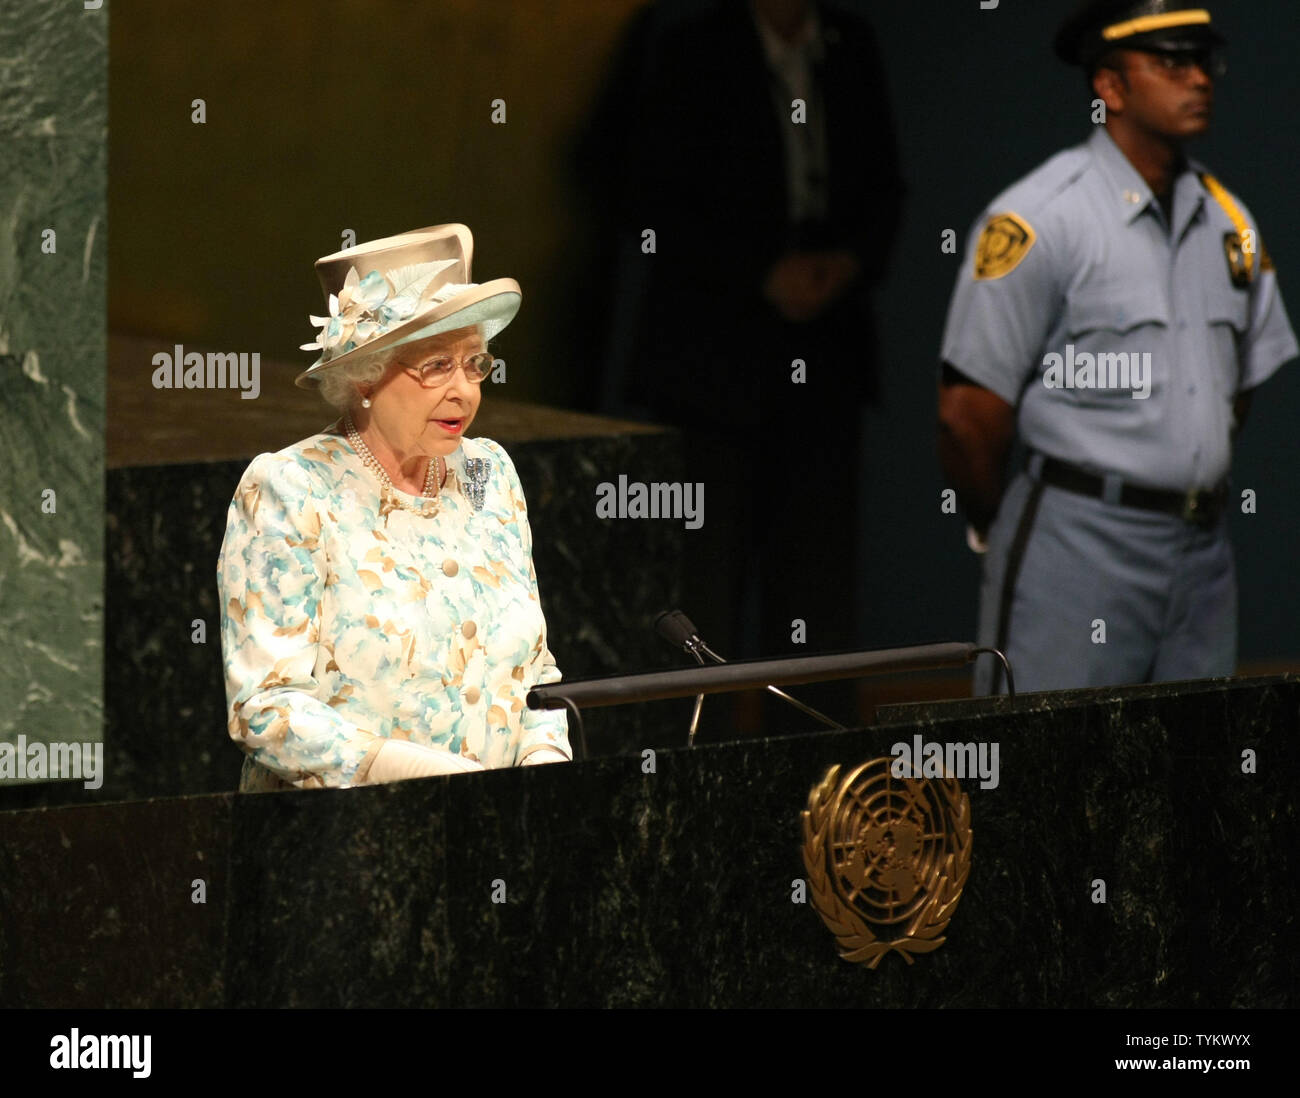 La regina Elisabetta II, 84 della Gran Bretagna, indirizzi l Assemblea Generale delle Nazioni Unite il 6 luglio, 2010 a New York. Il discorso segna la sua seconda apparizione sempre presso le Nazioni Unite, il primo luogo in 1957, come ella fa una breve visita alla città. UPI foto/Monika Graff.. Foto Stock